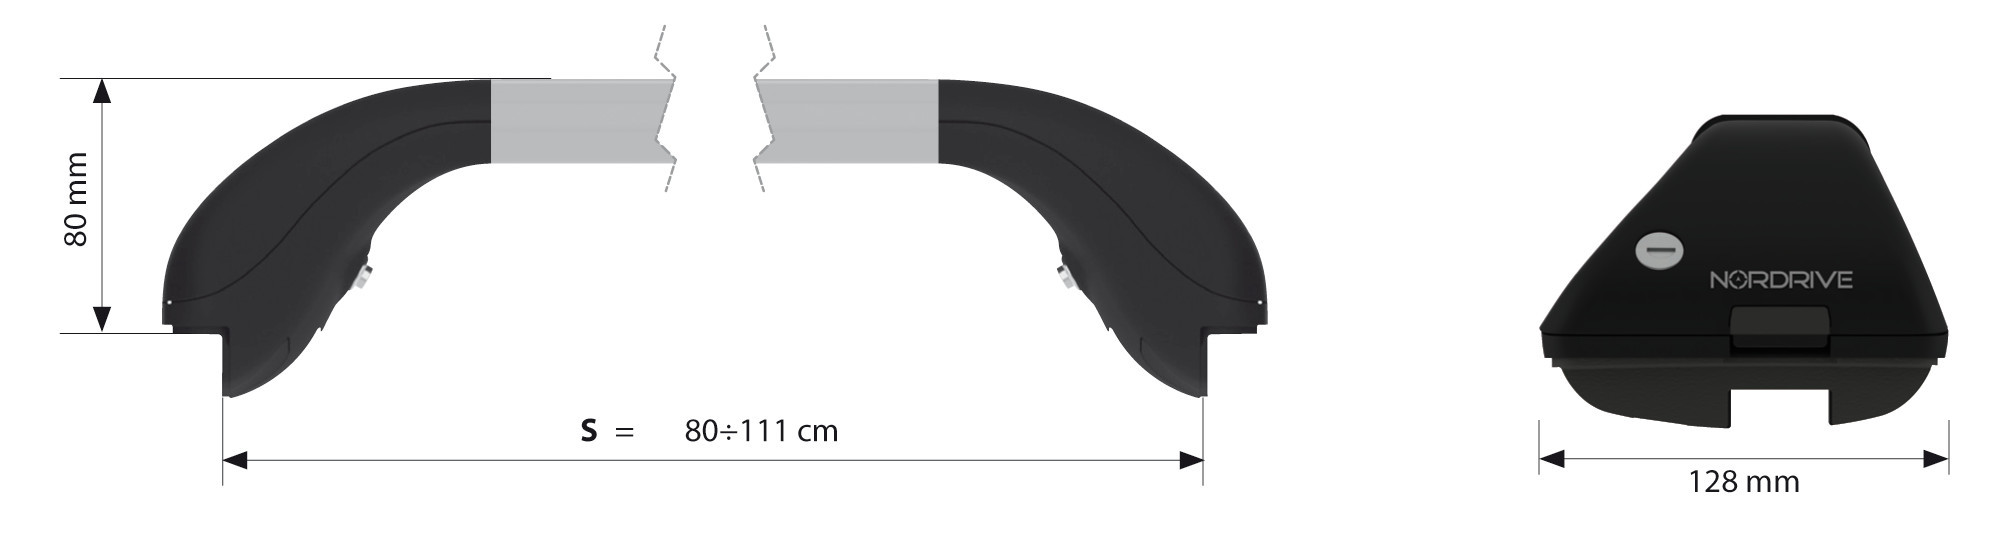 Snap Alu  aluminium teleszkópos rúd szett, 2 db - S - 80÷111 cm thumb